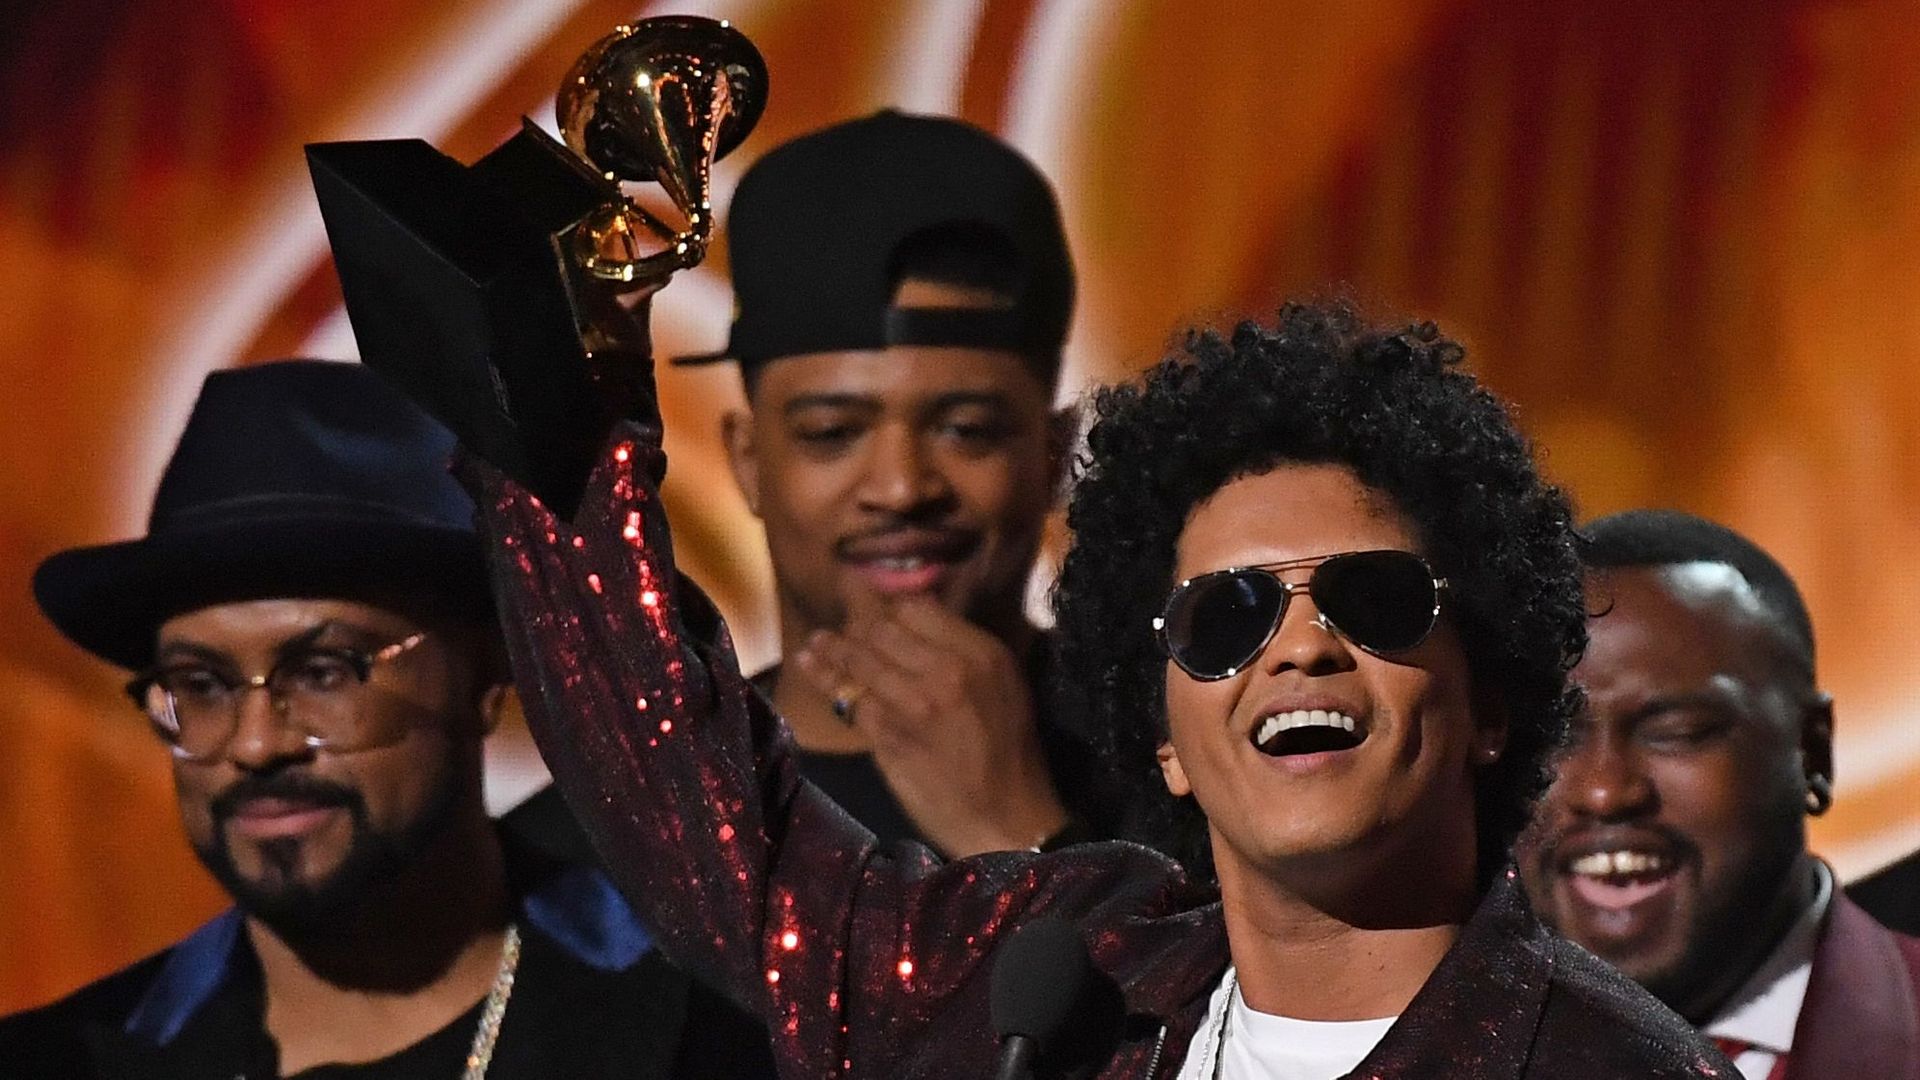 "That's What I Like" de Bruno Mars chanson de l'année aux Grammys